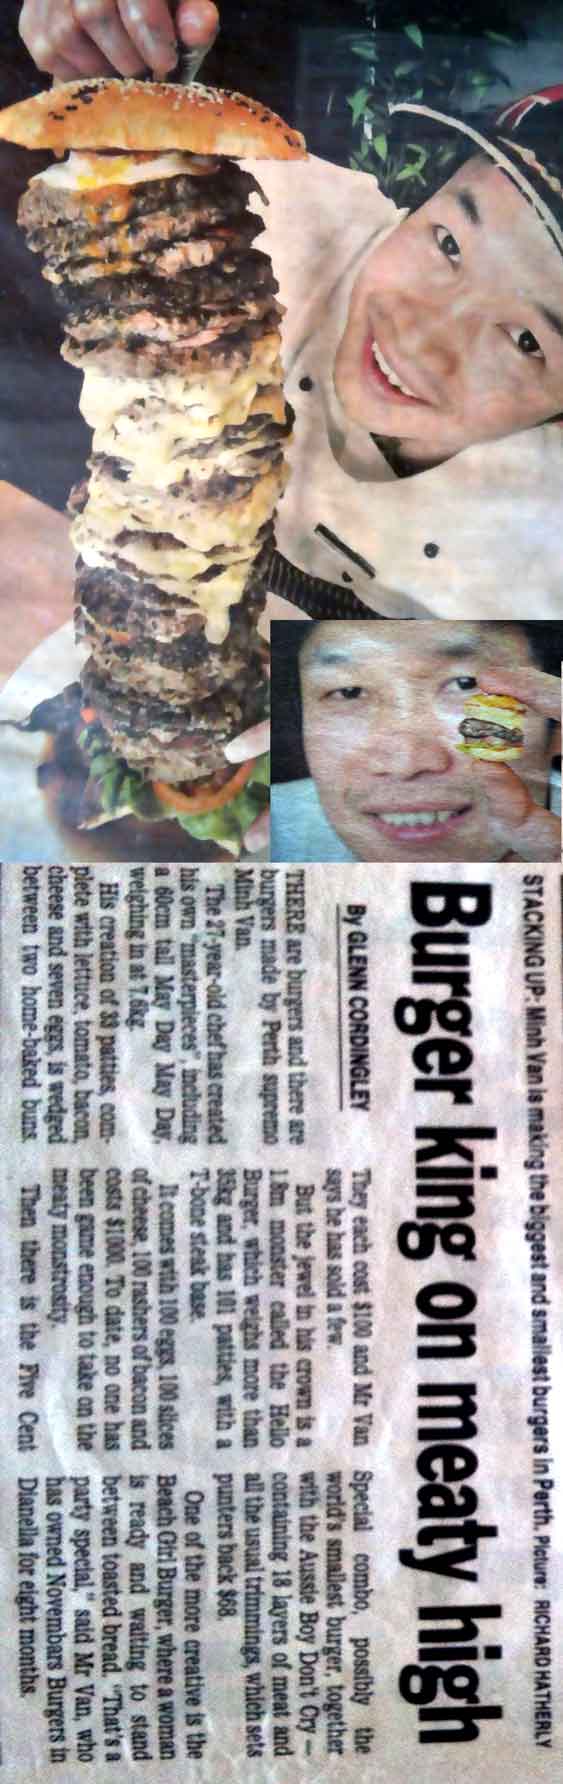 newspaper-burgerhigh.jpg